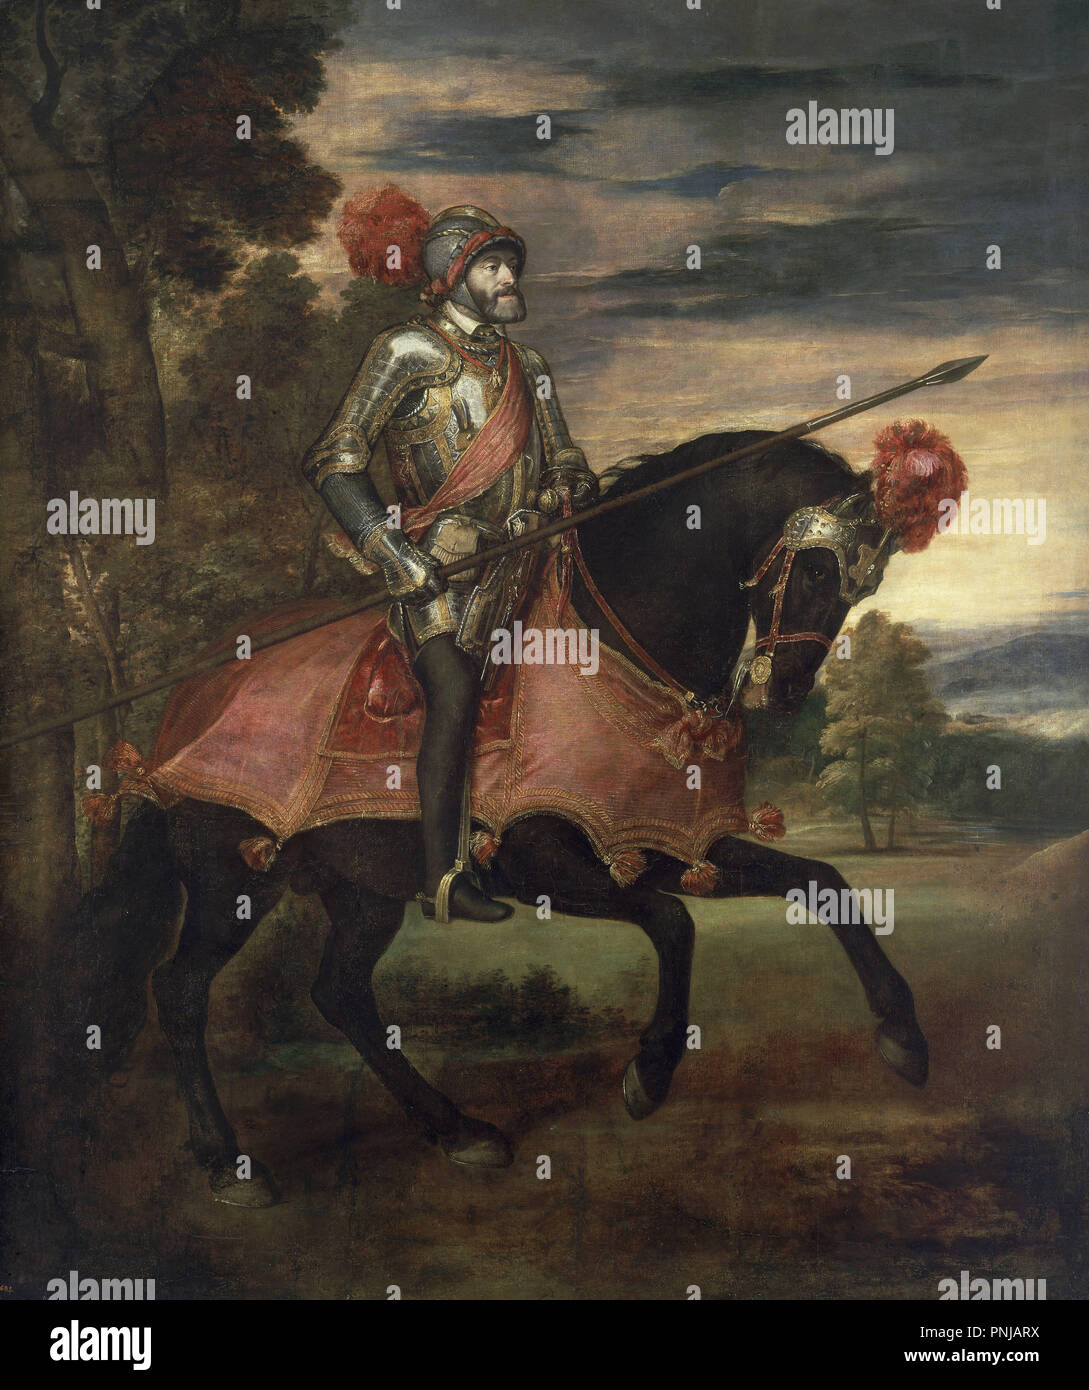 "El emperador Carlos V a caballo", 1548, escuela de italiano, óleo sobre lienzo, 335 cm x 283 cm, P00410. Autor: Tiziano. Ubicación: MUSEO DEL PRADO-PINTURA. MADRID. España. Foto de stock